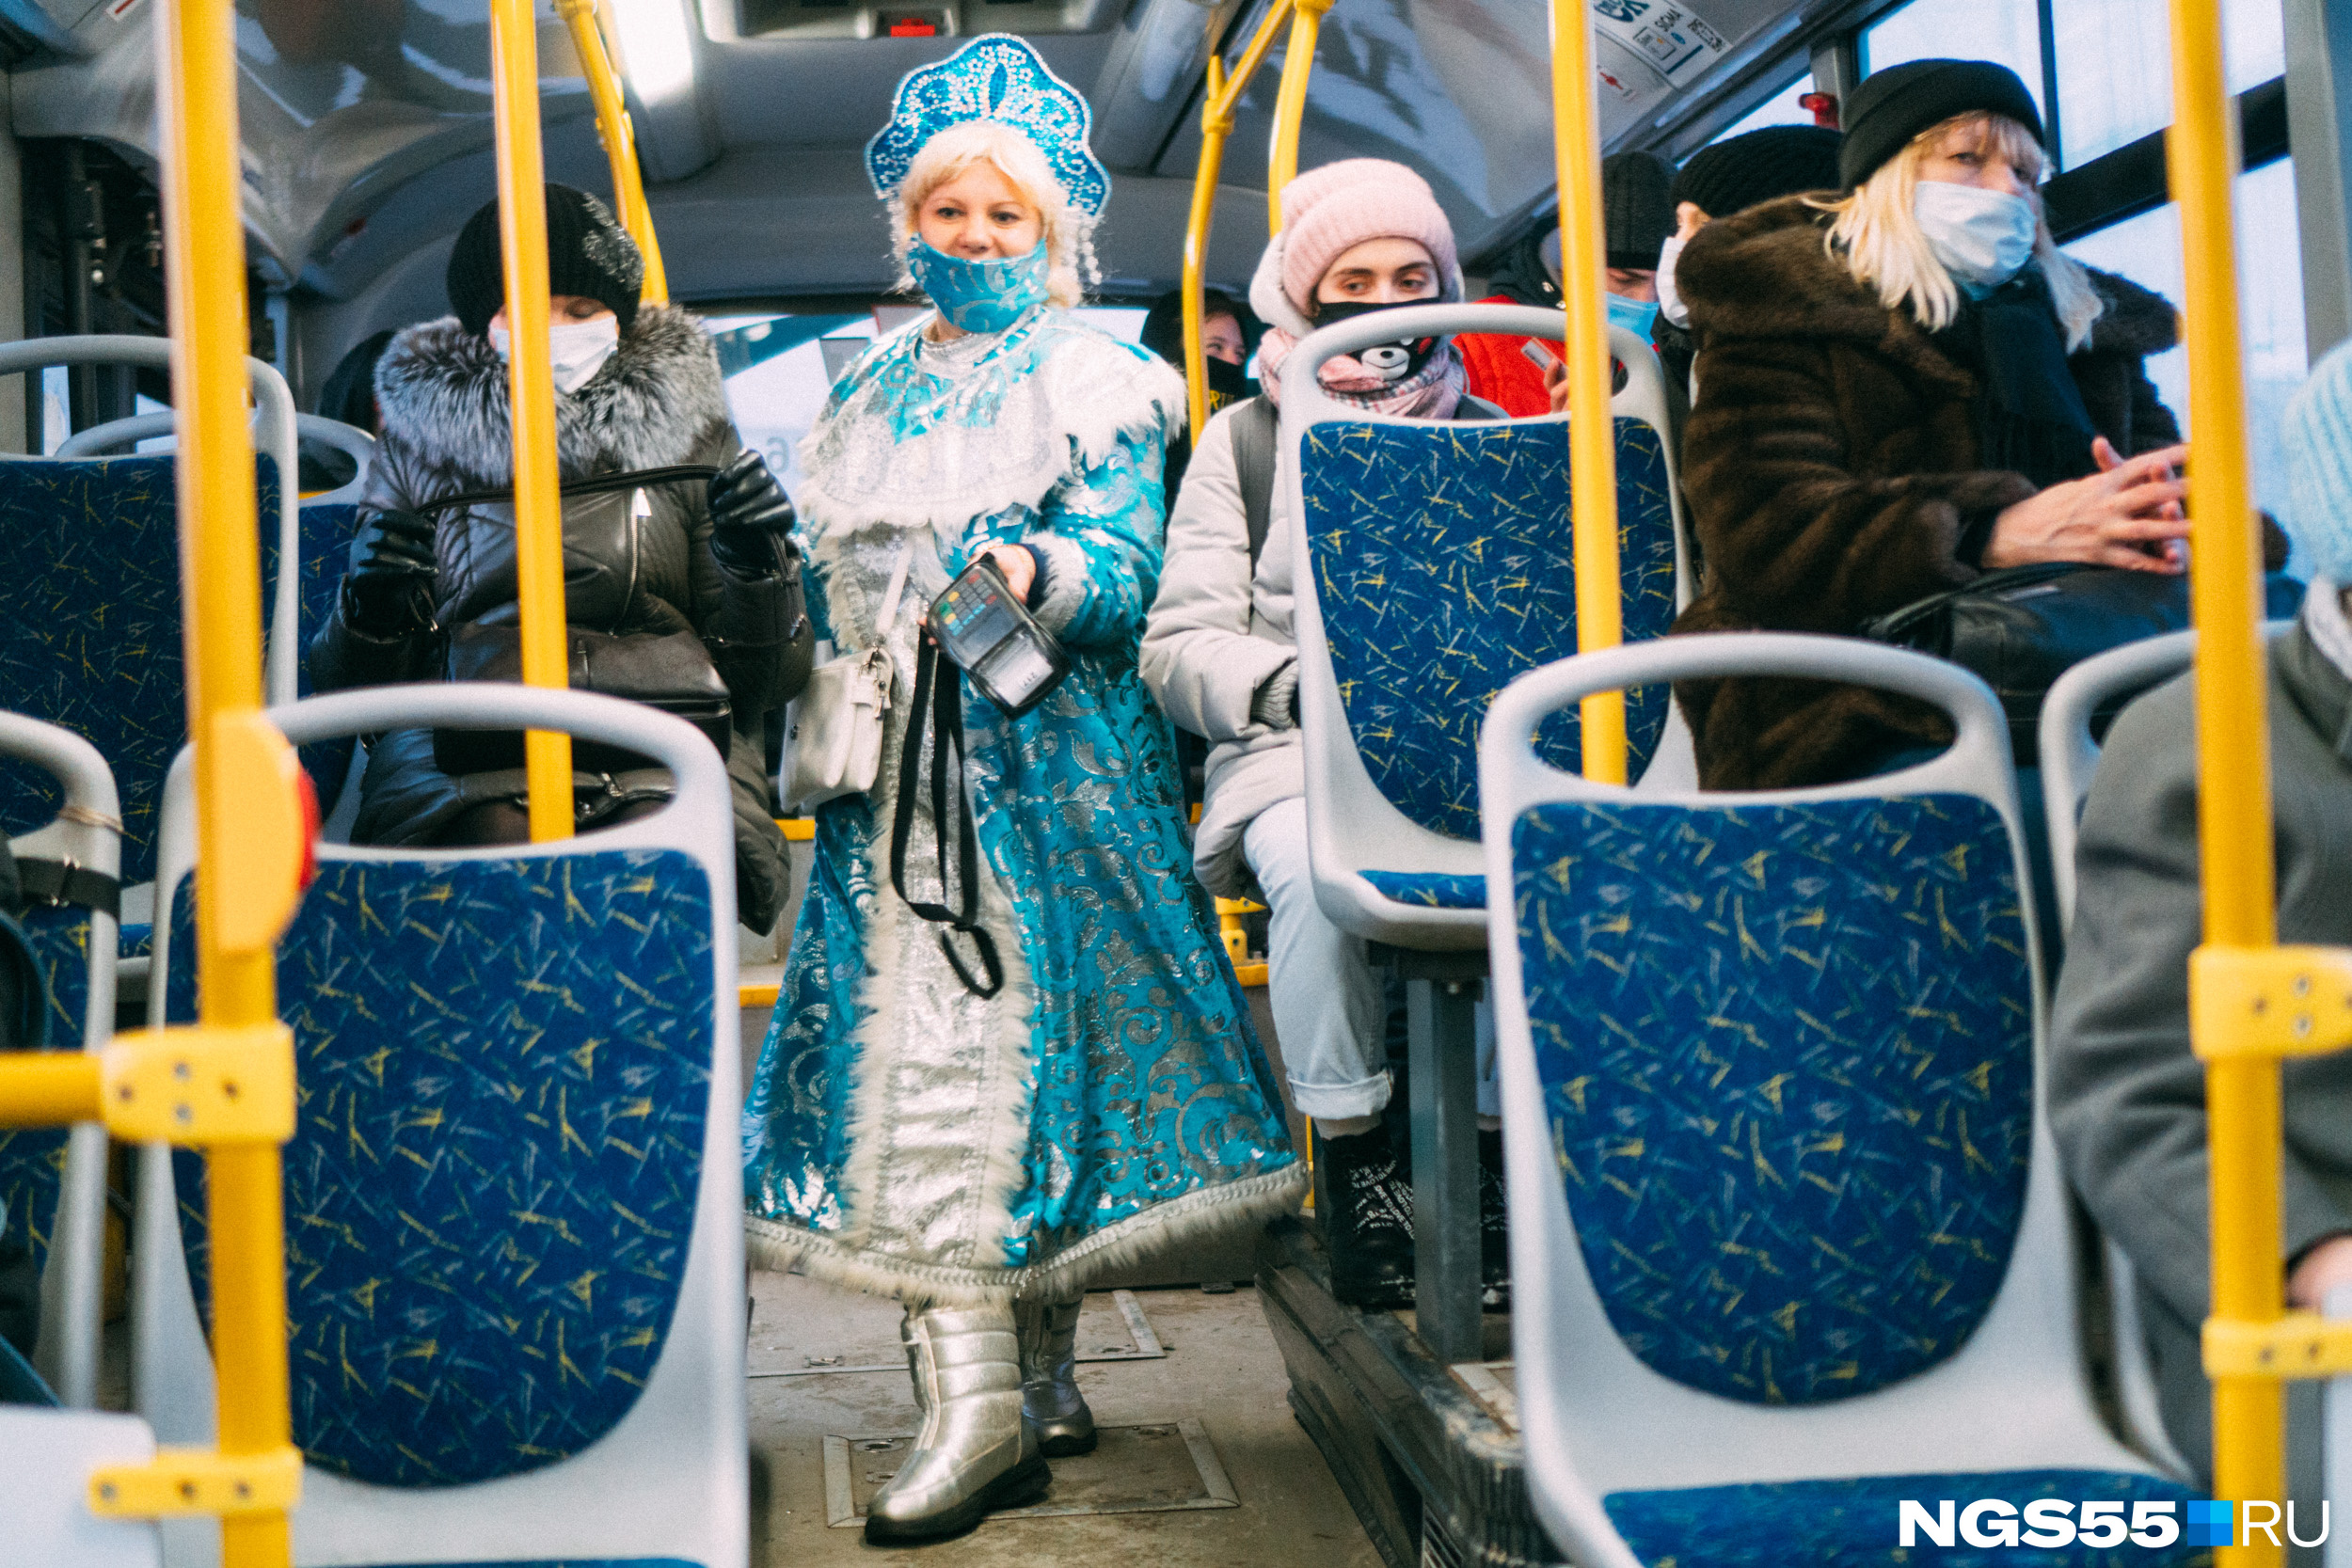 С такой Снегурочкой салон автобуса превращается в ледяную усадьбу Деда Мороза